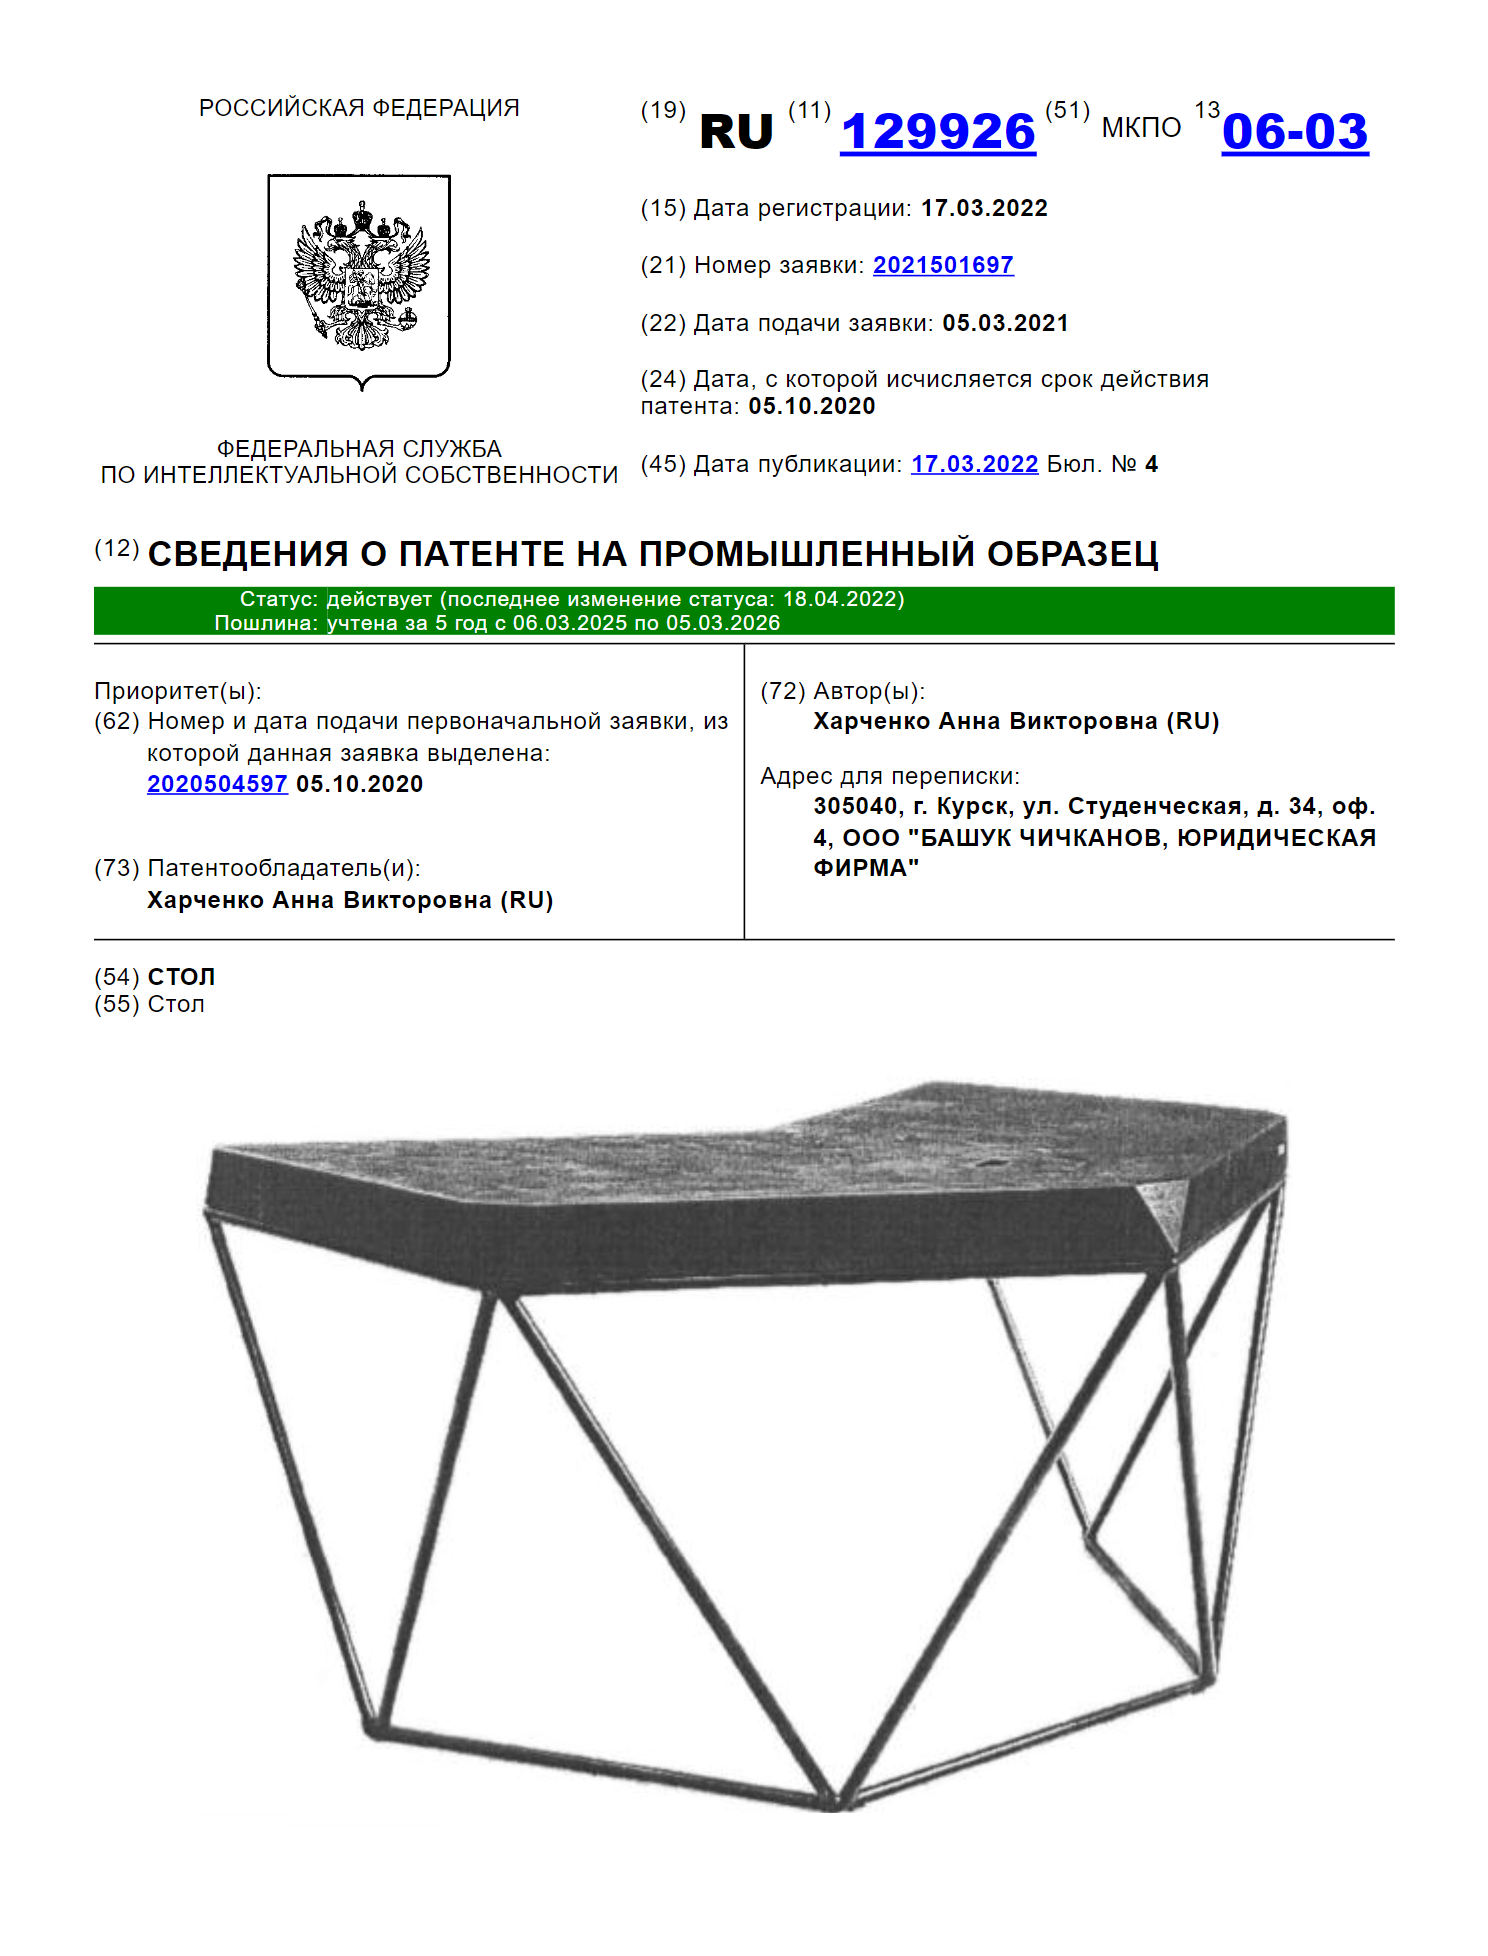 Патенты на промышленный дизайн в Украине — Єдність